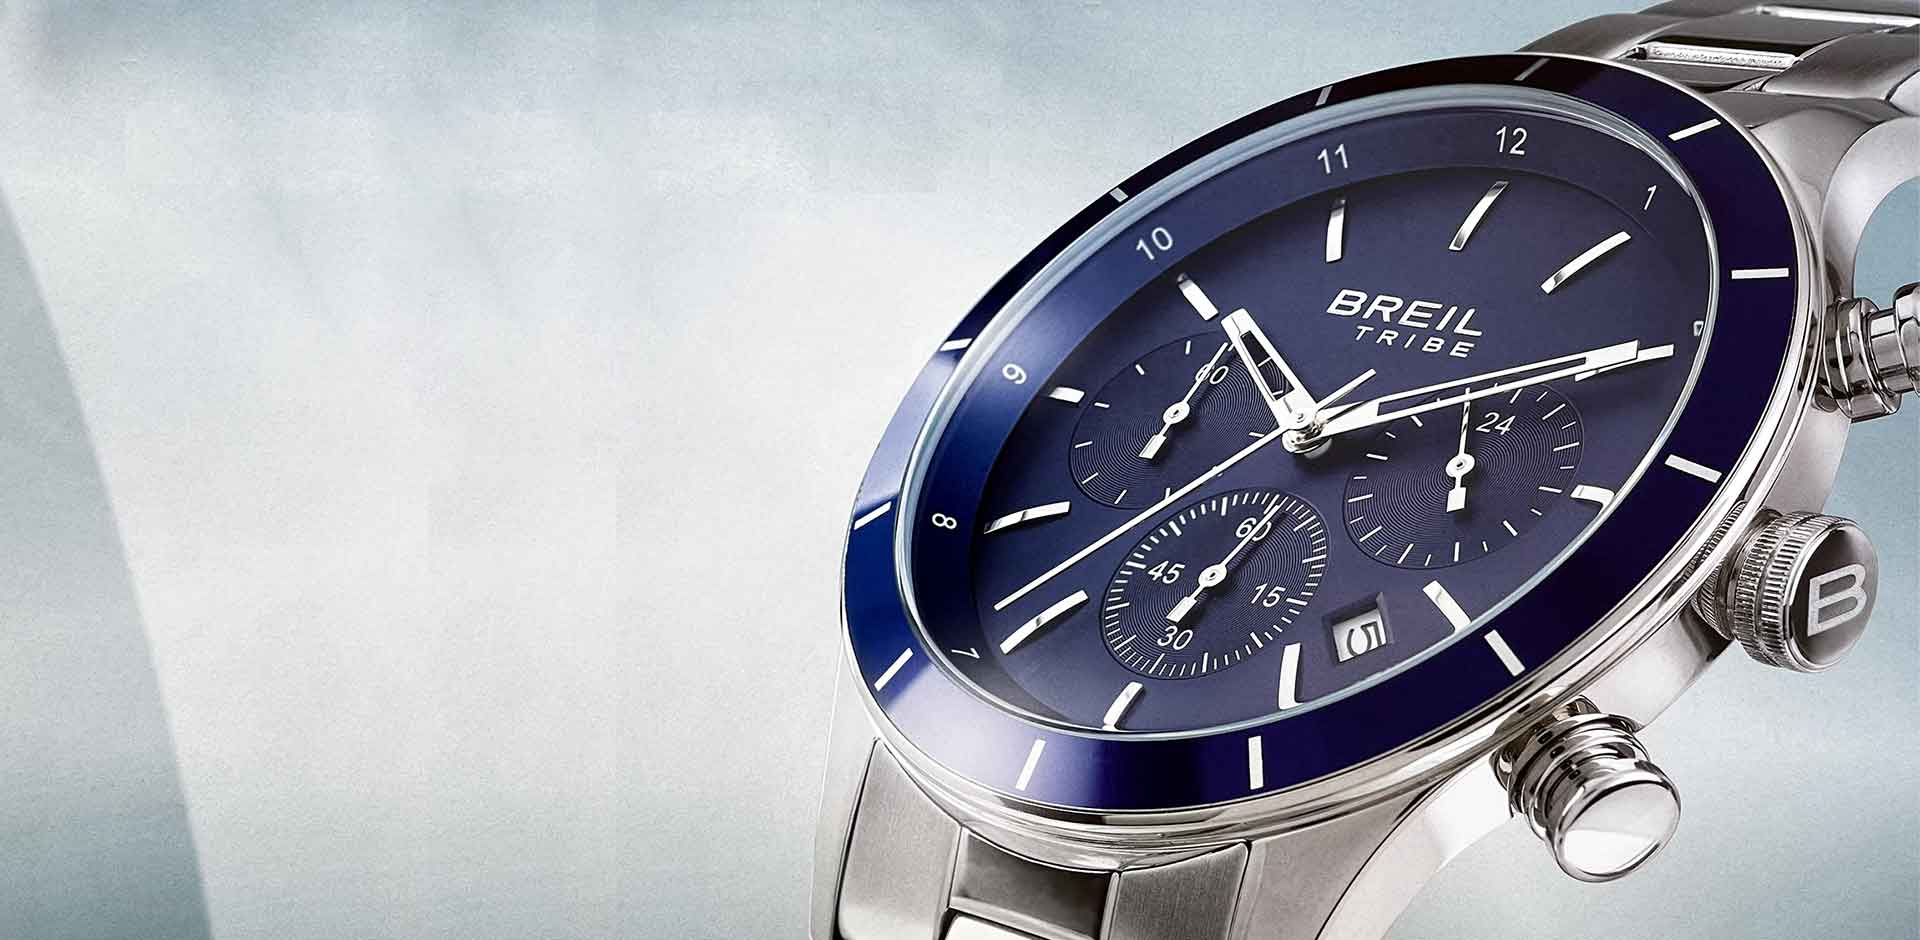  Joyería Zeller Comprar relojes Breil online - PRECIOS BARATOS. Comprar en Tienda